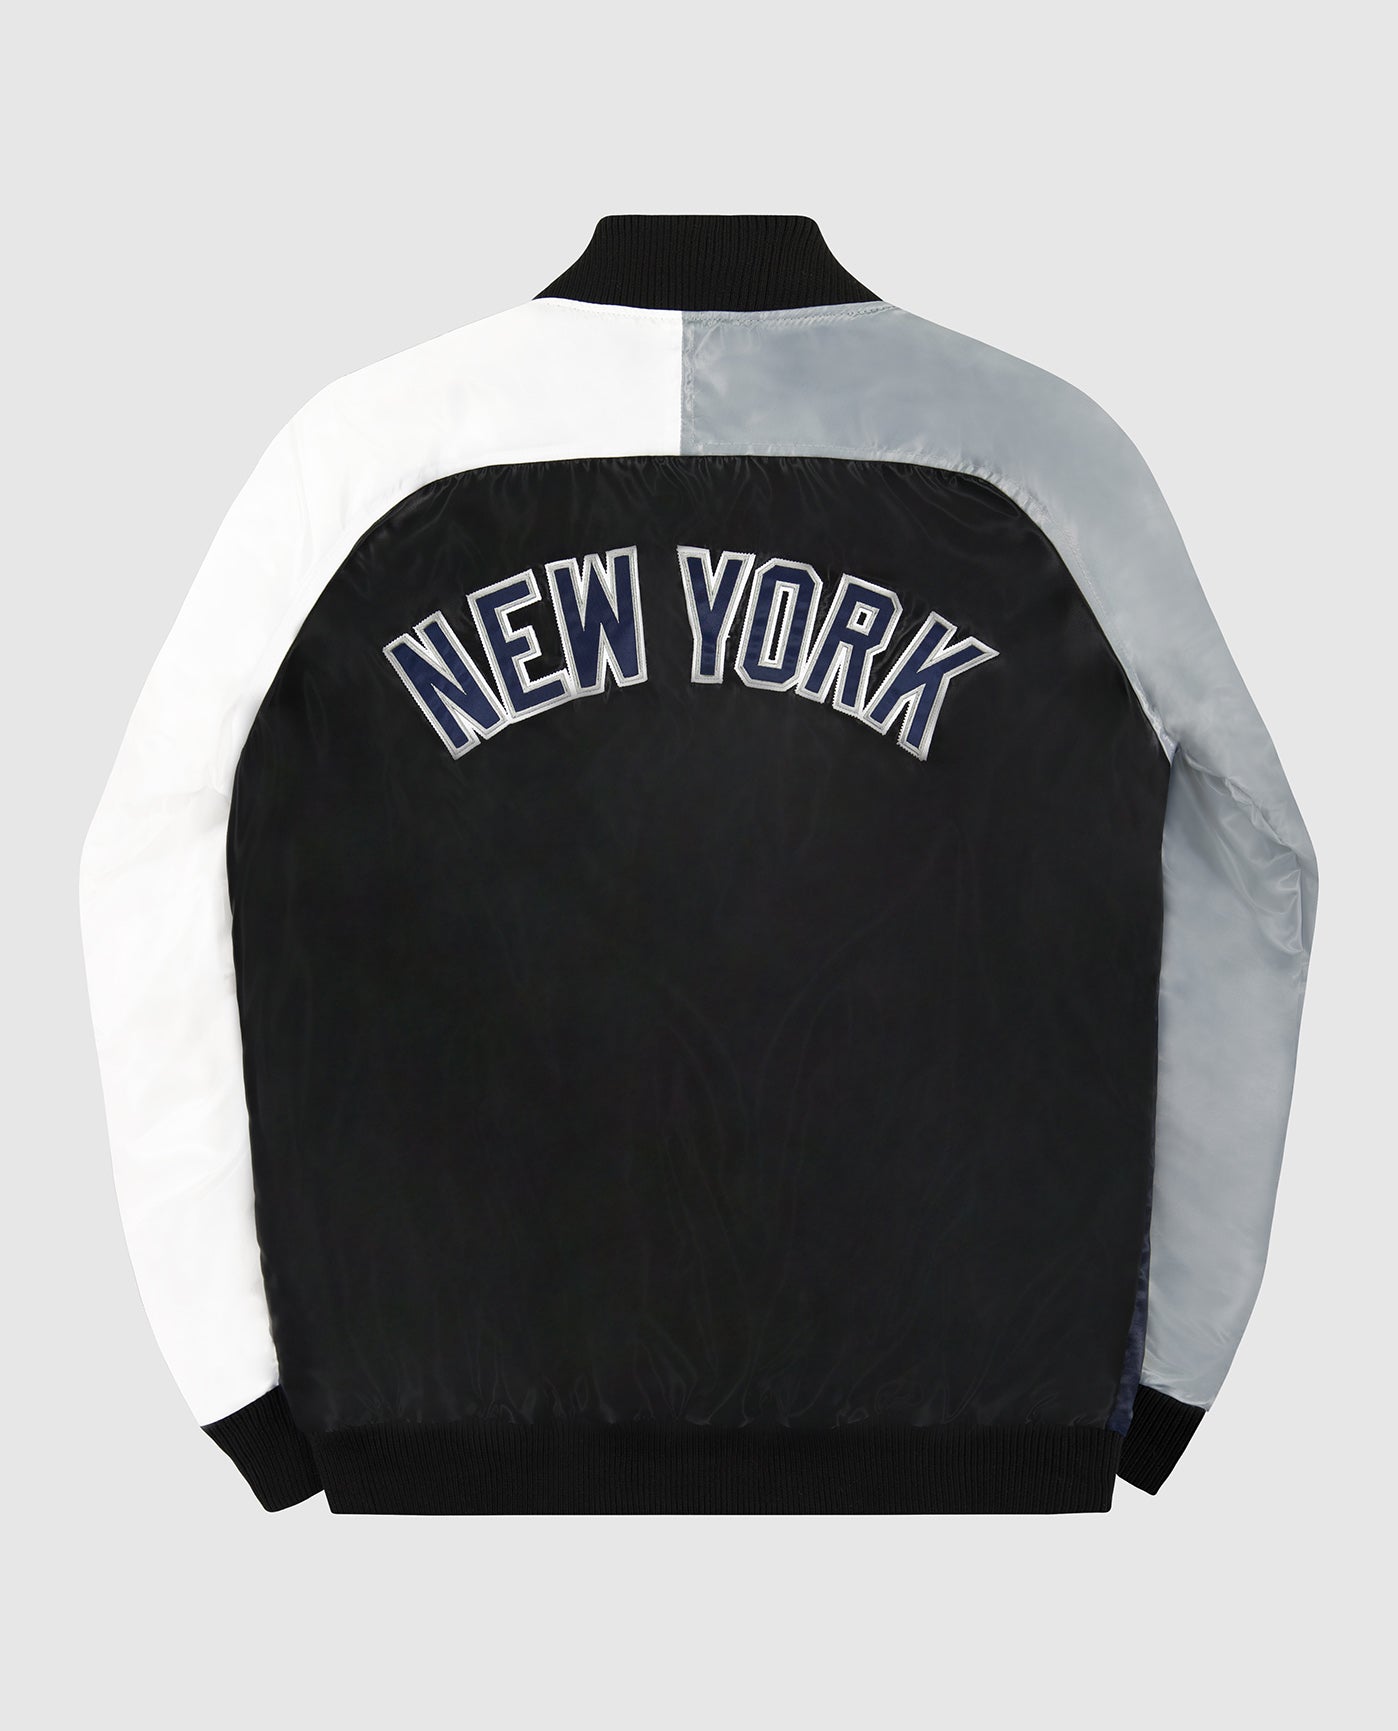 Men's New York Yankees Starter White The Legend Jacket